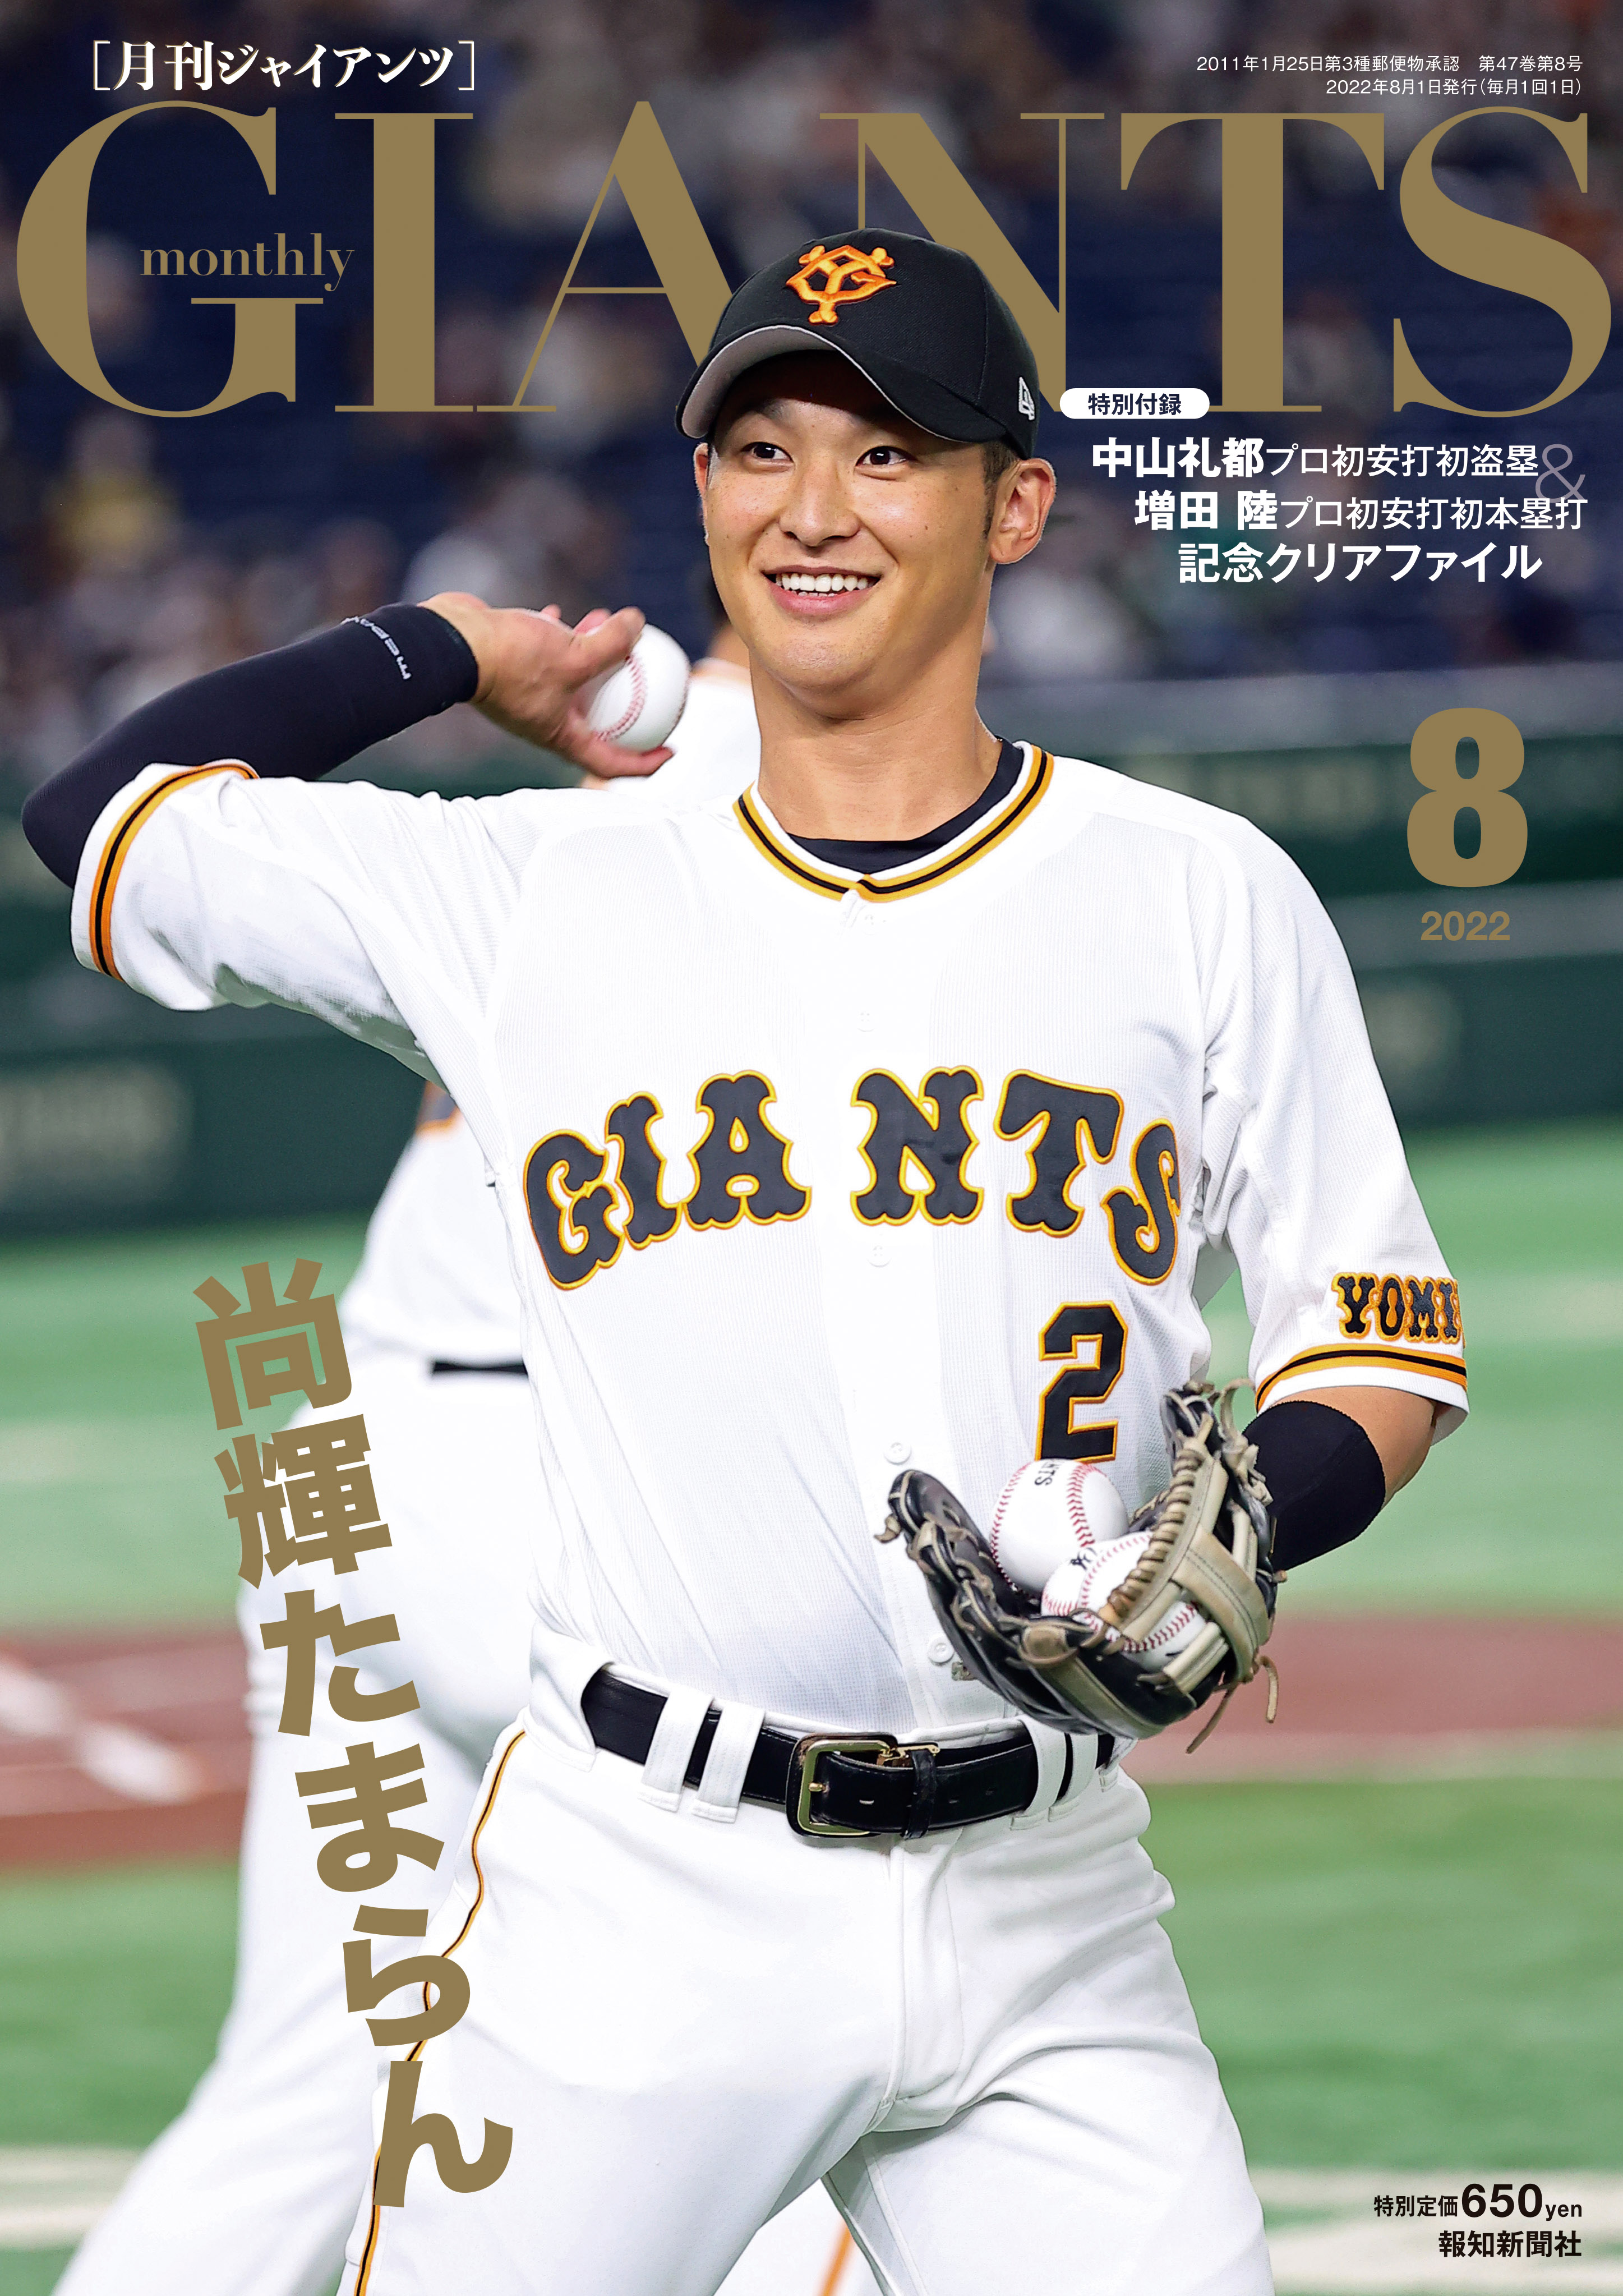 表紙は吉川尚輝!「月刊ジャイアンツ８月号」6月24日(金)から発売